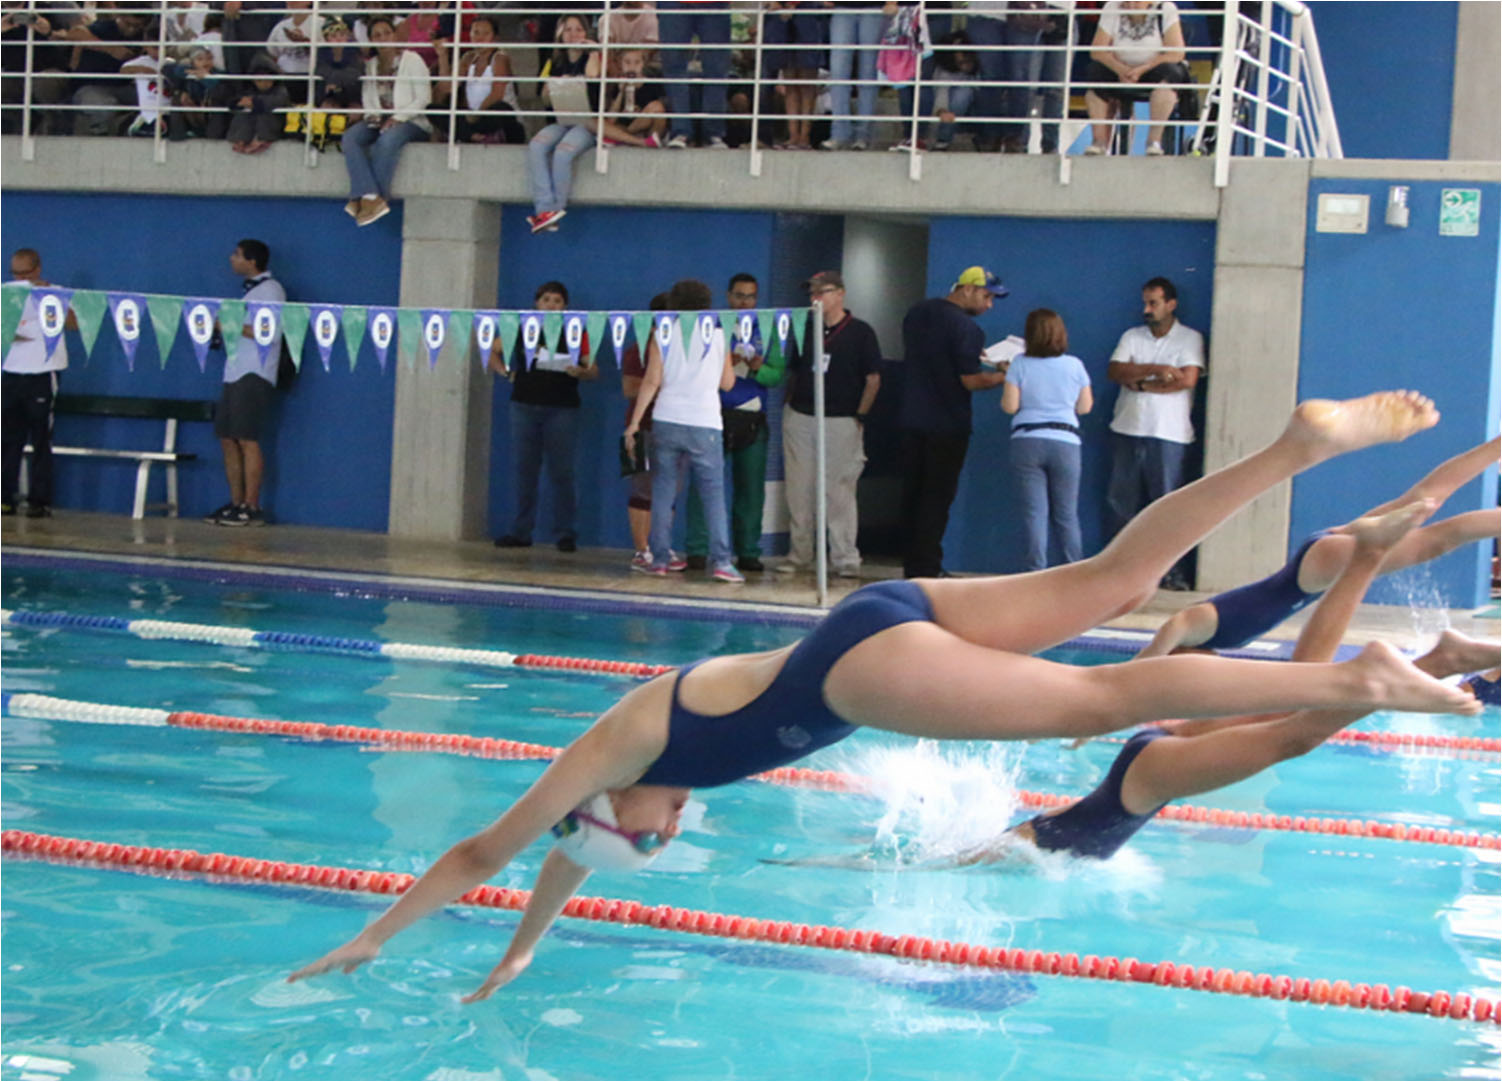 Actividades deportivas, en esta se muestra la natación